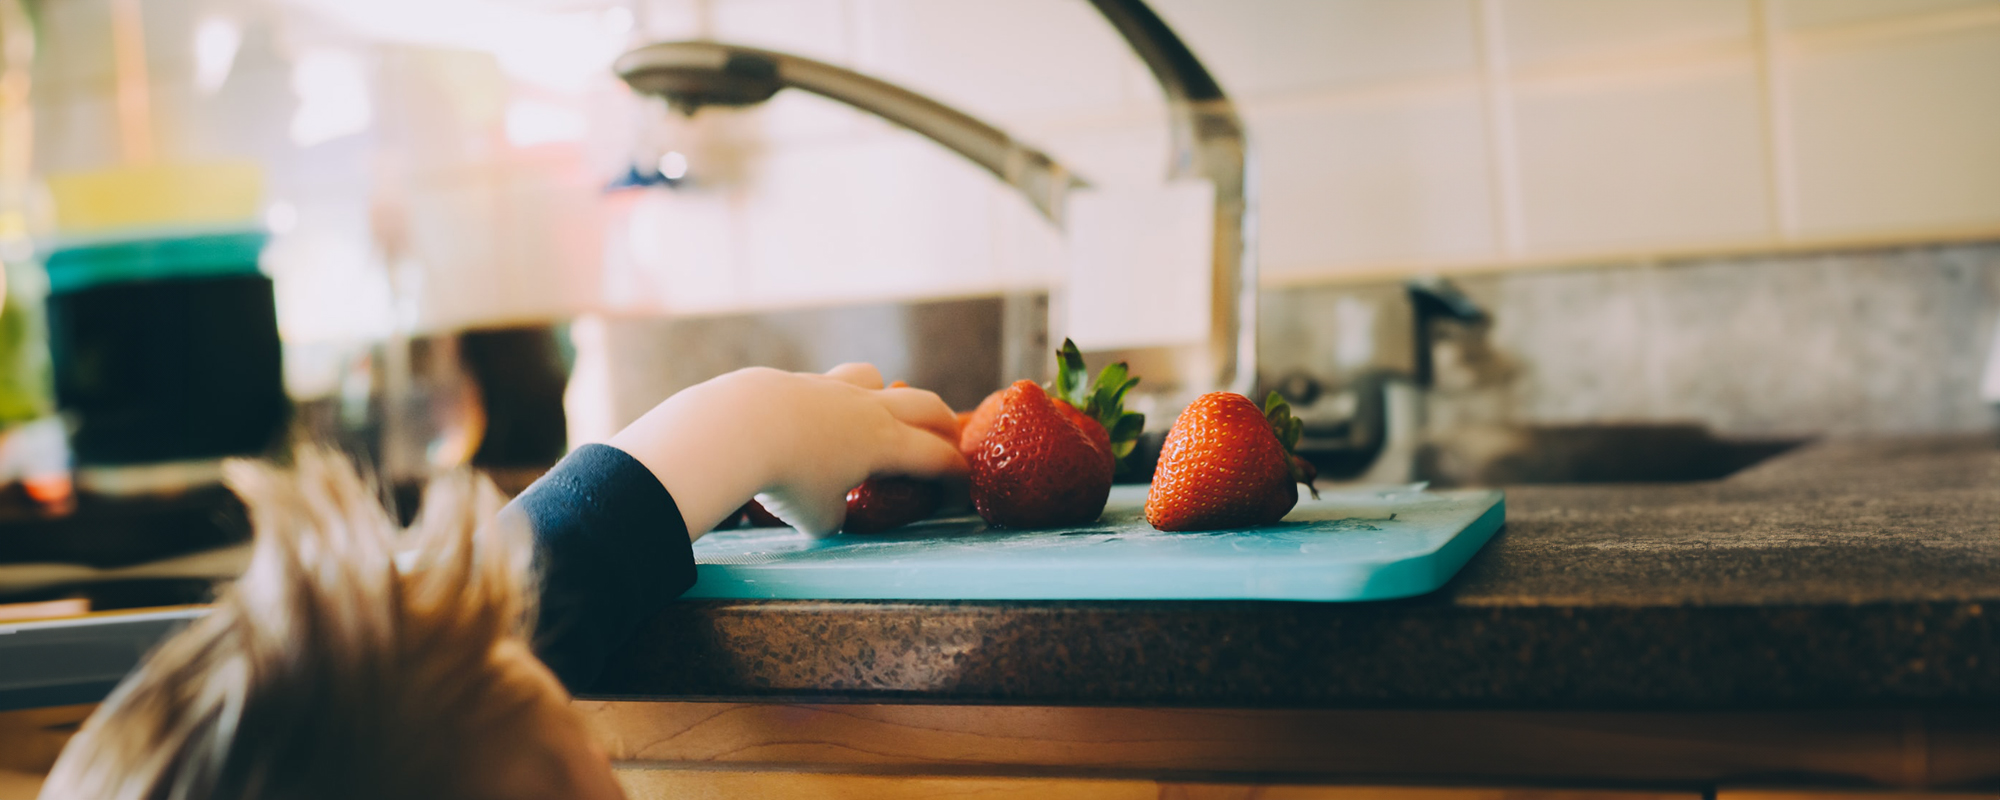 Kleines Kind greift nach Erdbeeren, die auf der Küchentheke neben einer Spüle stehen